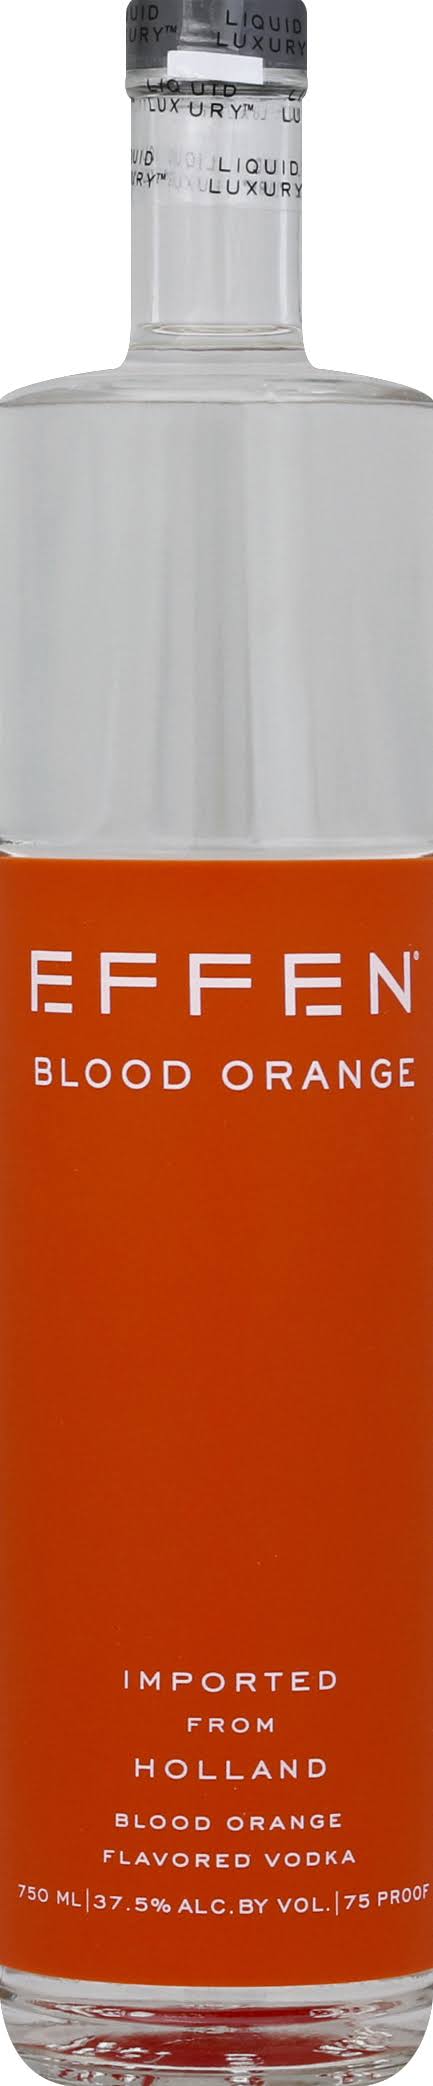 Effen Dutch Vodka - 750ml, Blood Orange